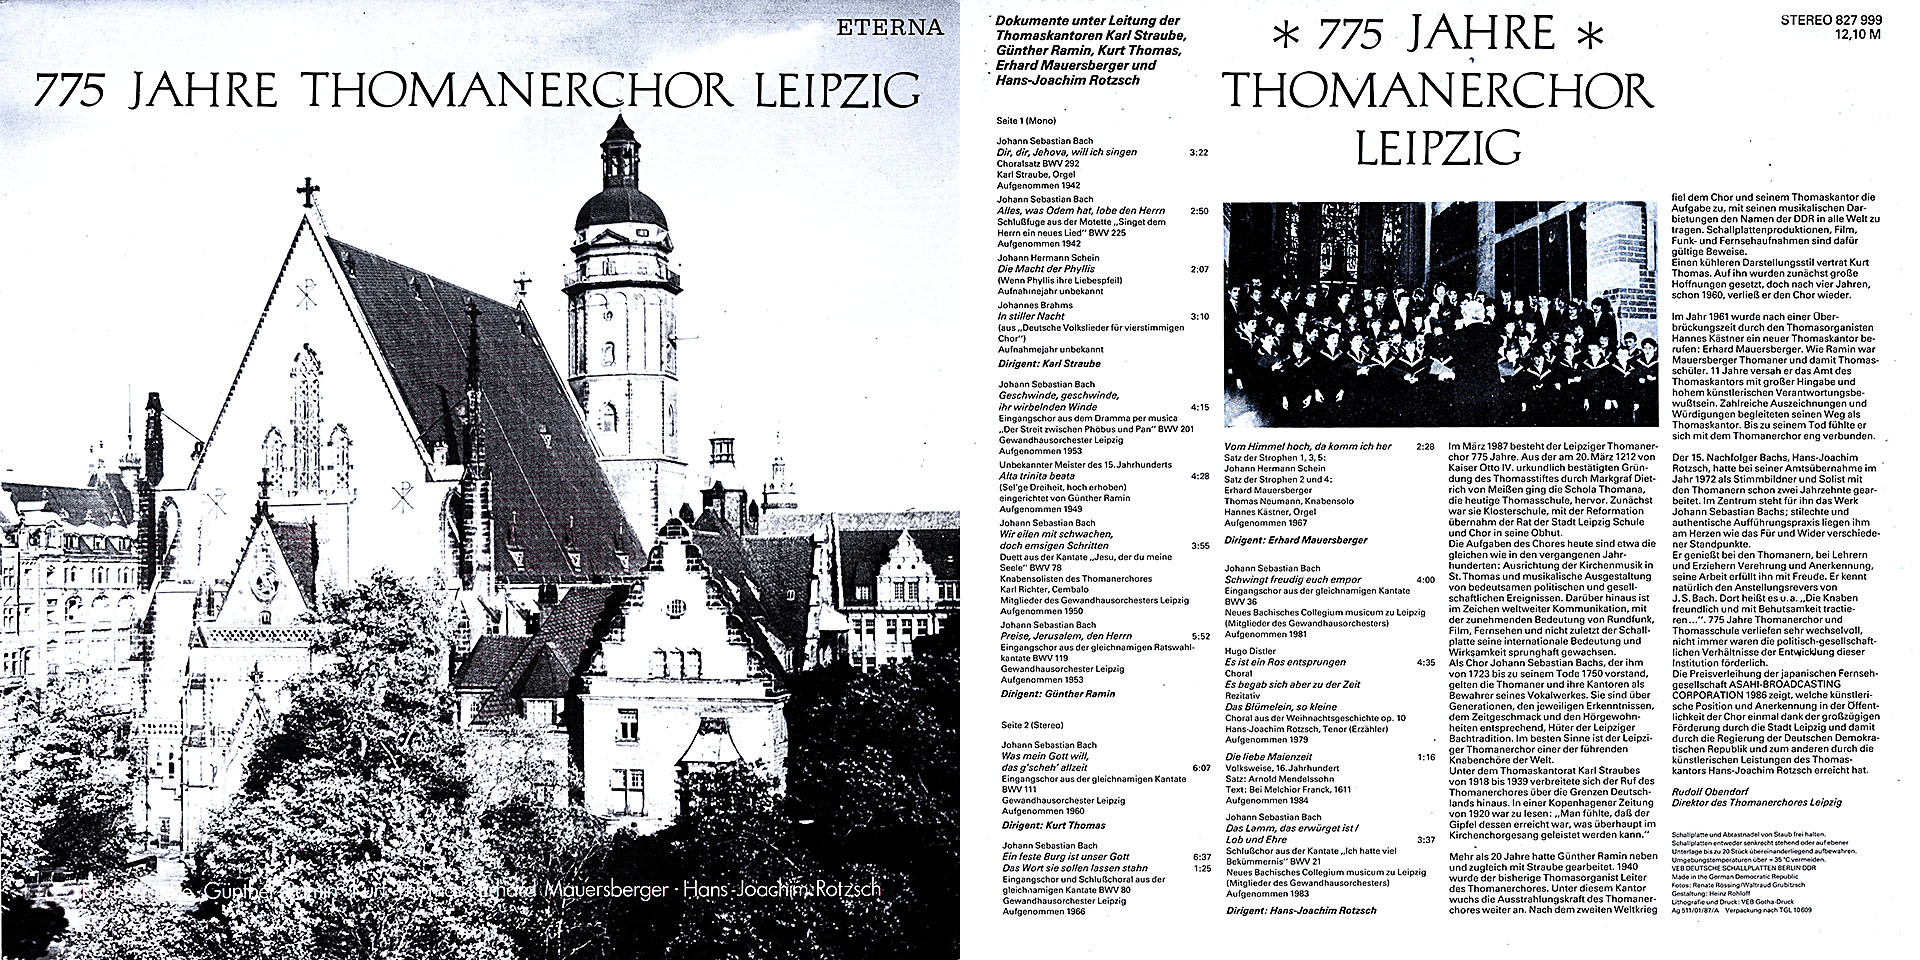 775 Jahre Thomanerchor Leipzig